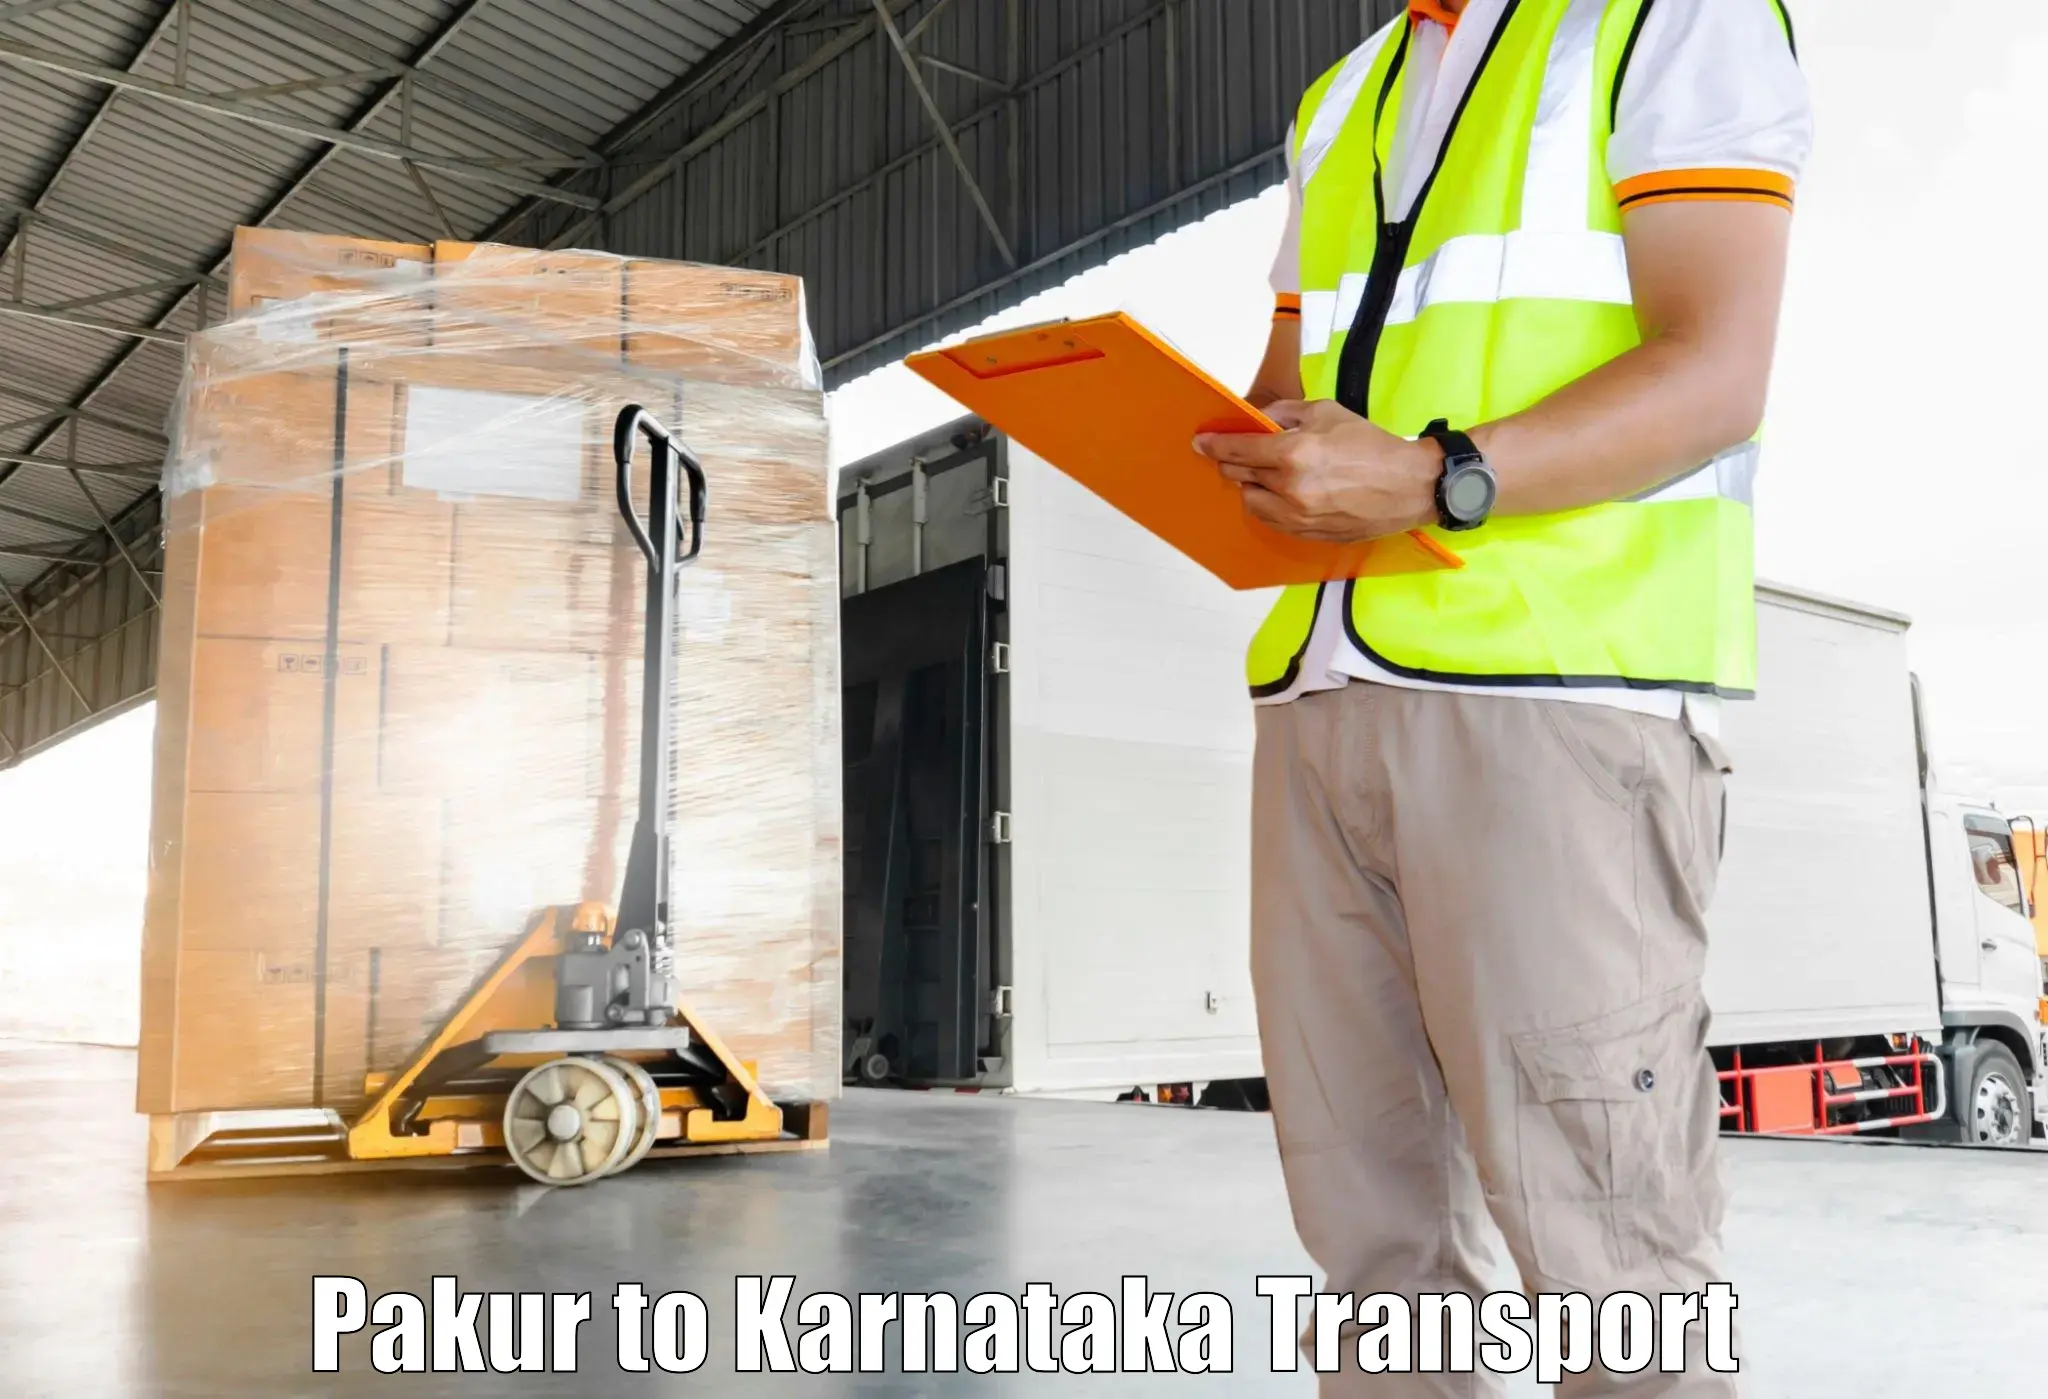 Furniture transport service in Pakur to Basavana Bagewadi